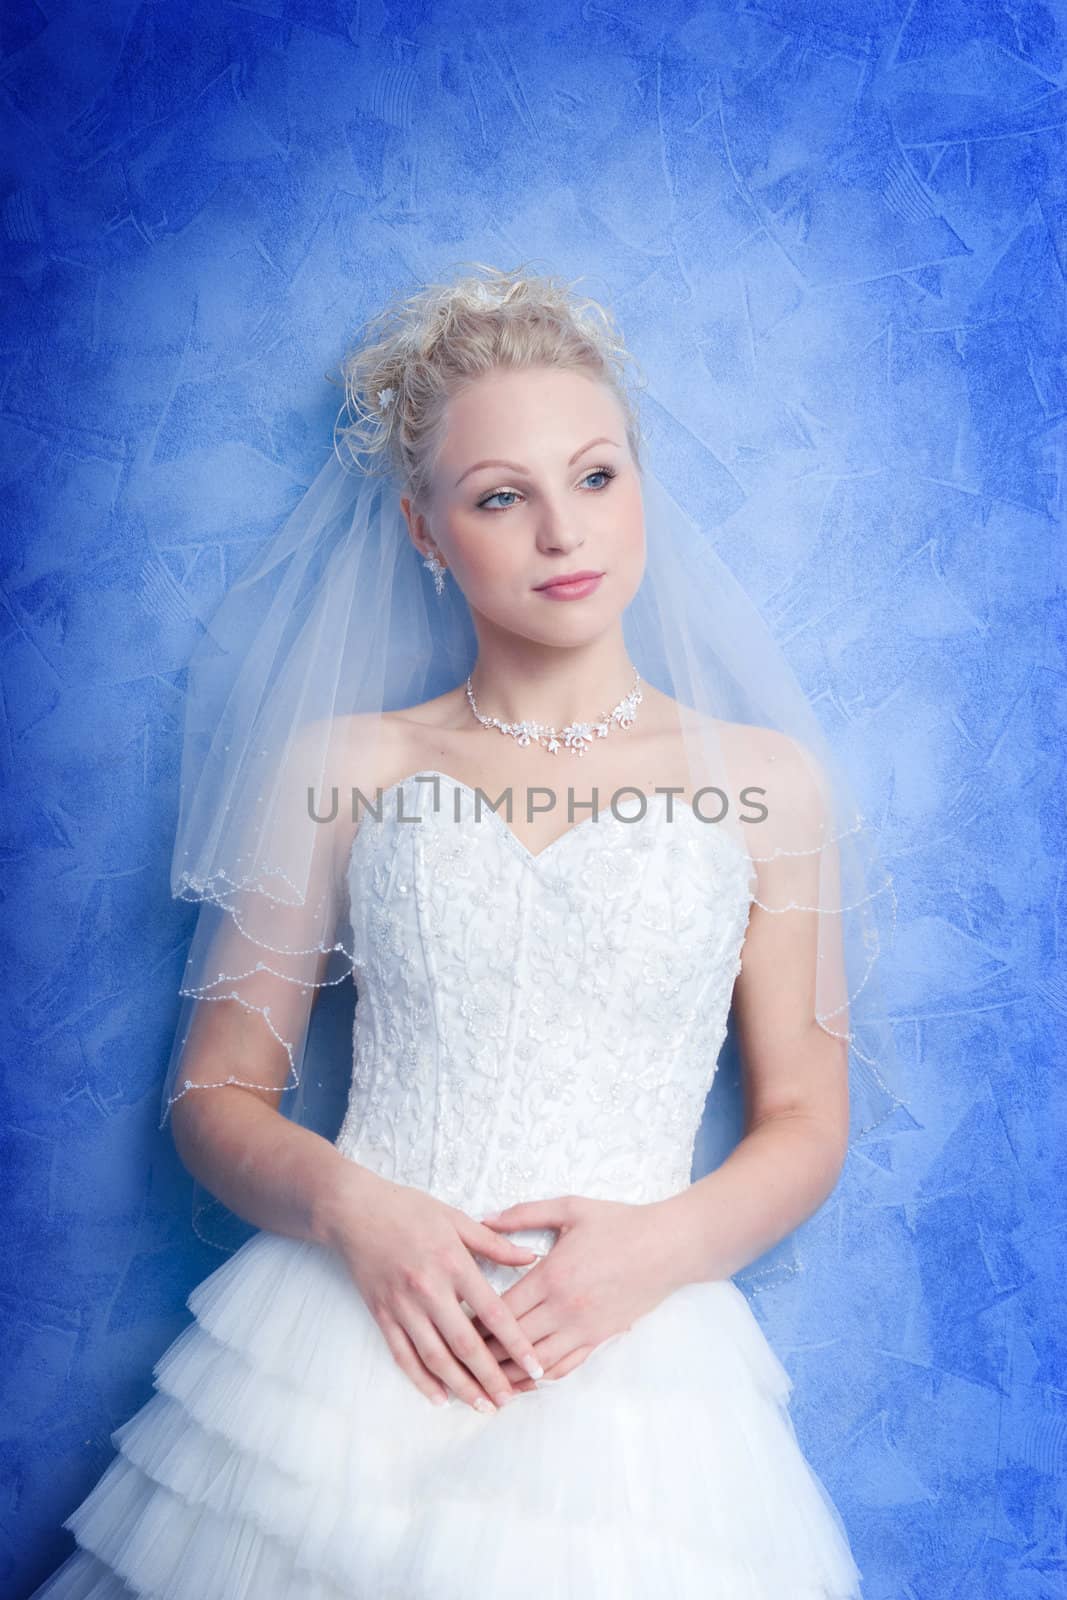 pensive bride by vsurkov